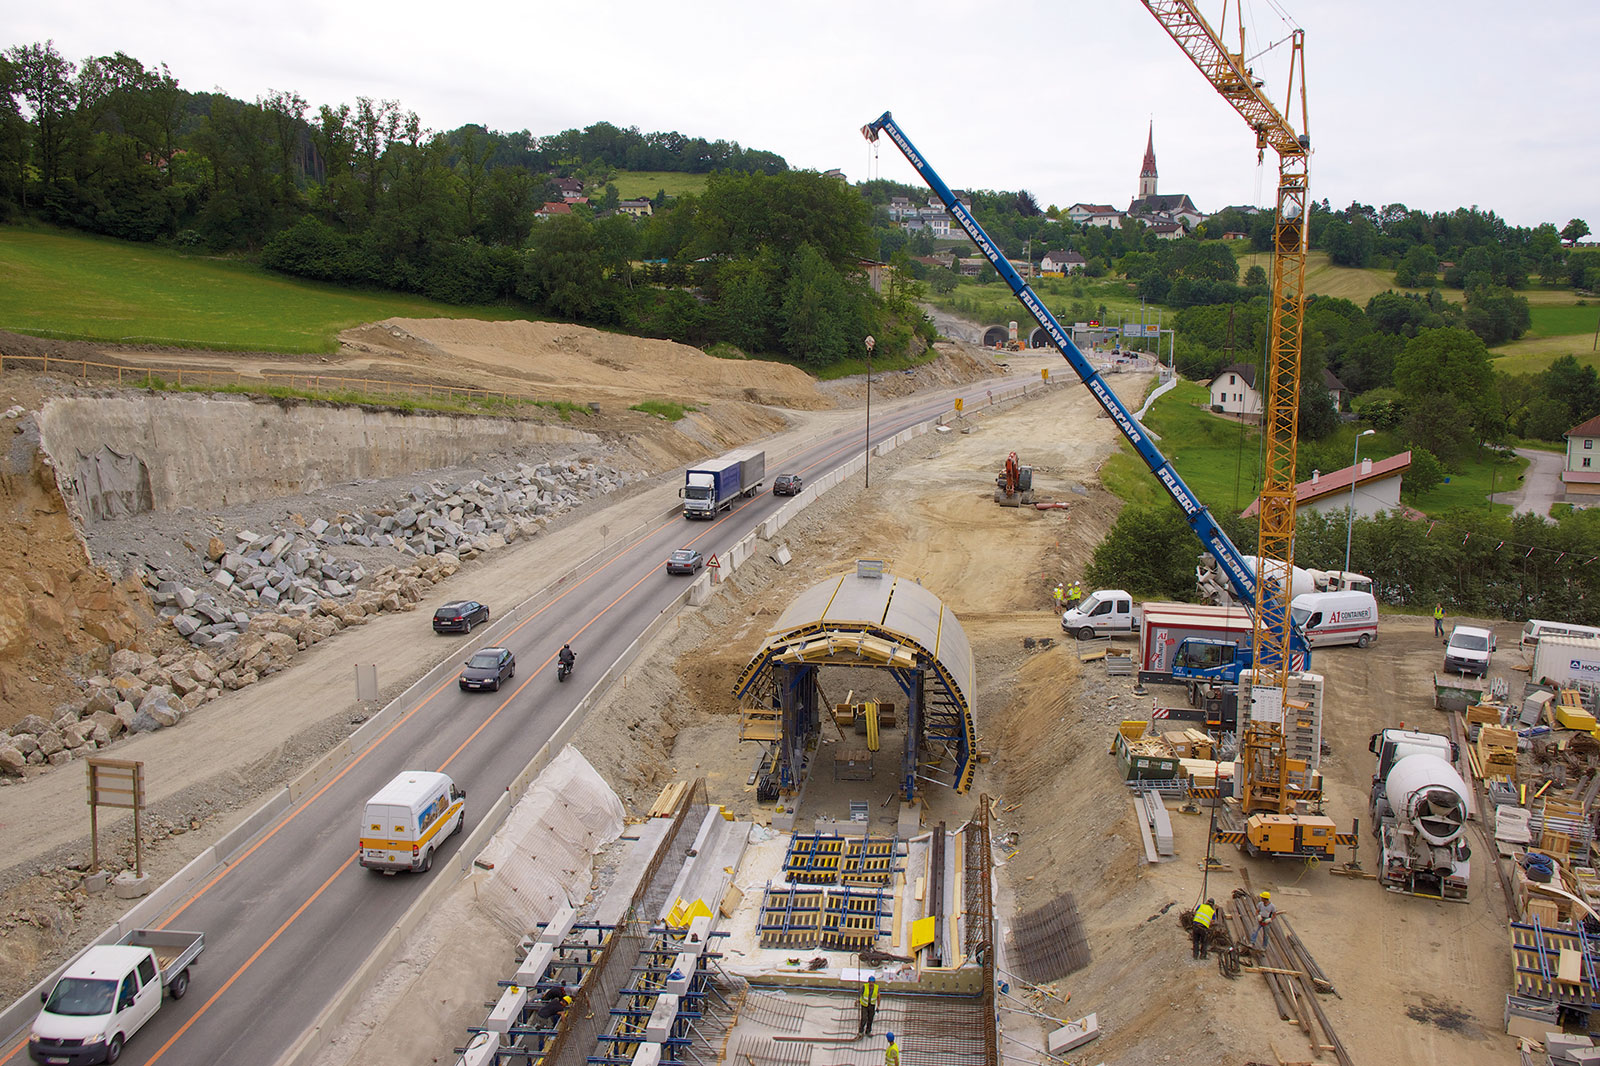 Vysoké hospodárnosti a flexibility betonáže je dosahováno díky stavebnicovému systému bednění tunelu. foto Helipix